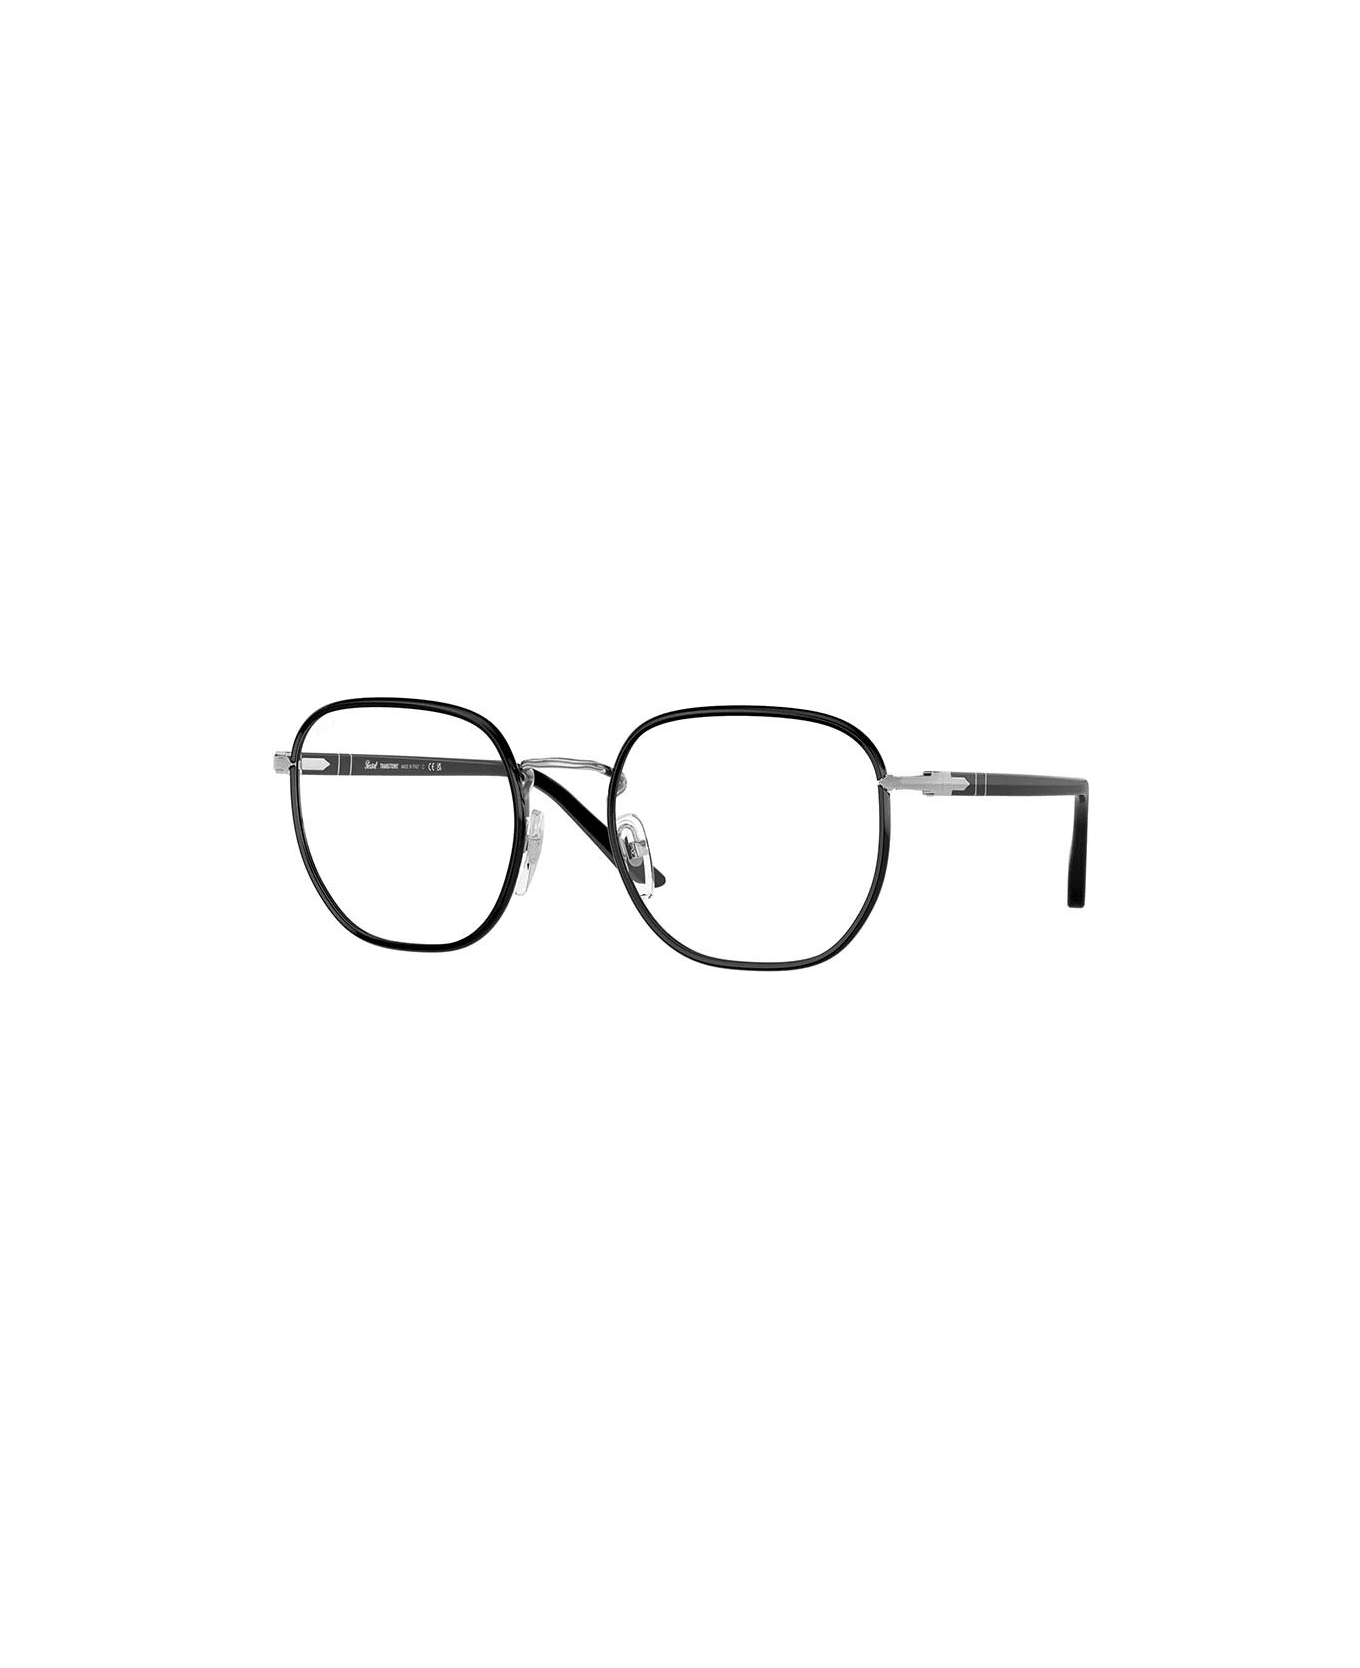 Persol Eyewear - Nero/Verde